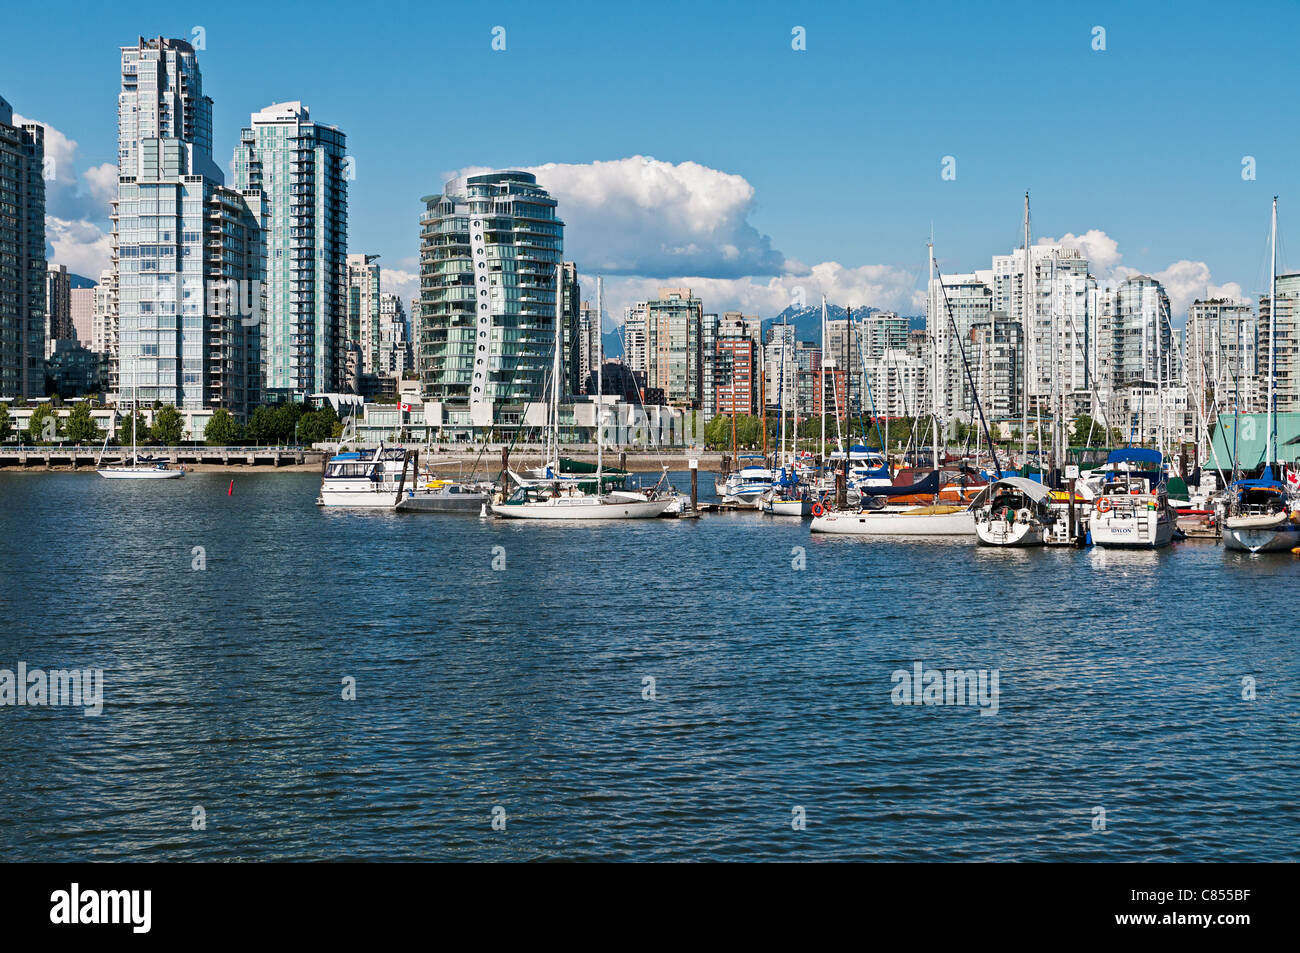 Einen malerischen Blick auf Vancouvers False Creek Wasserstraße und die Skyline der Stadtteil Yaletown. Stockfoto